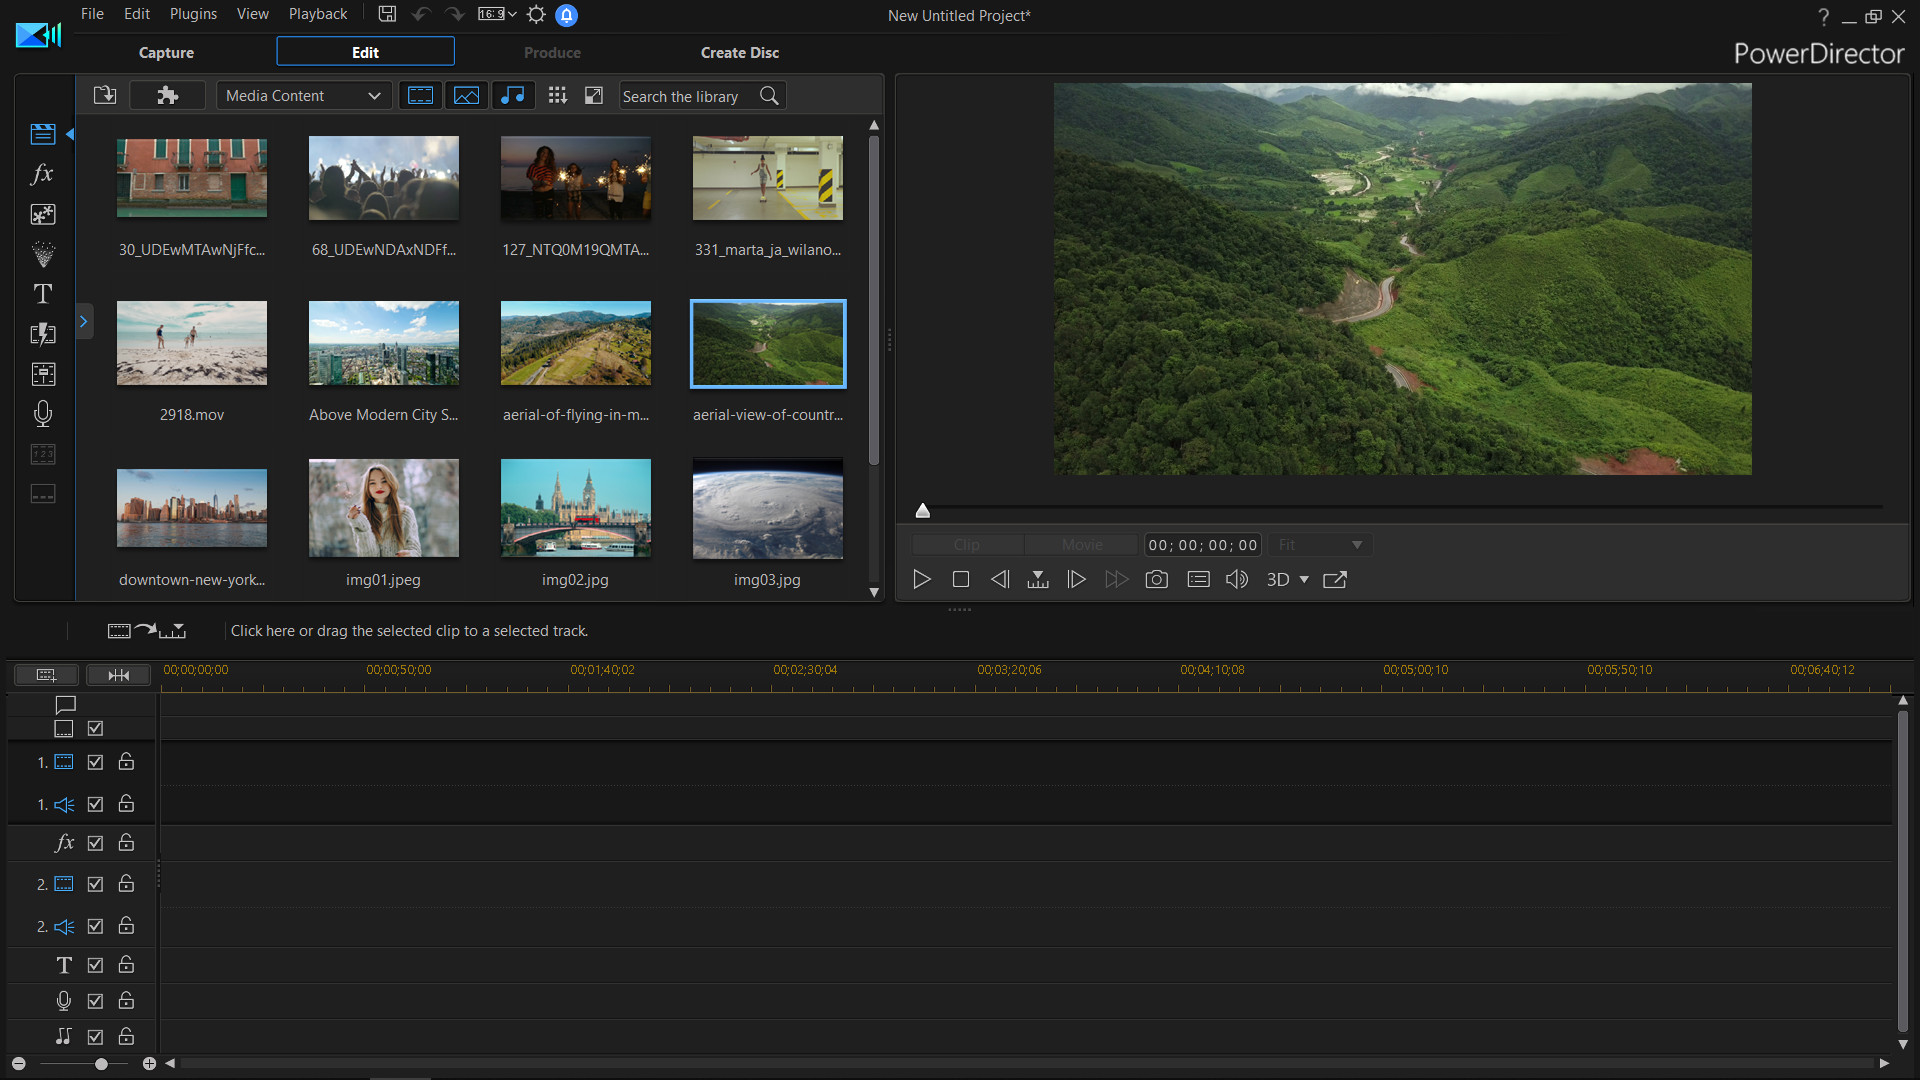 CyberLink PowerDirector 18 Ultimate - Video editing, Video editor, making videos screenshot